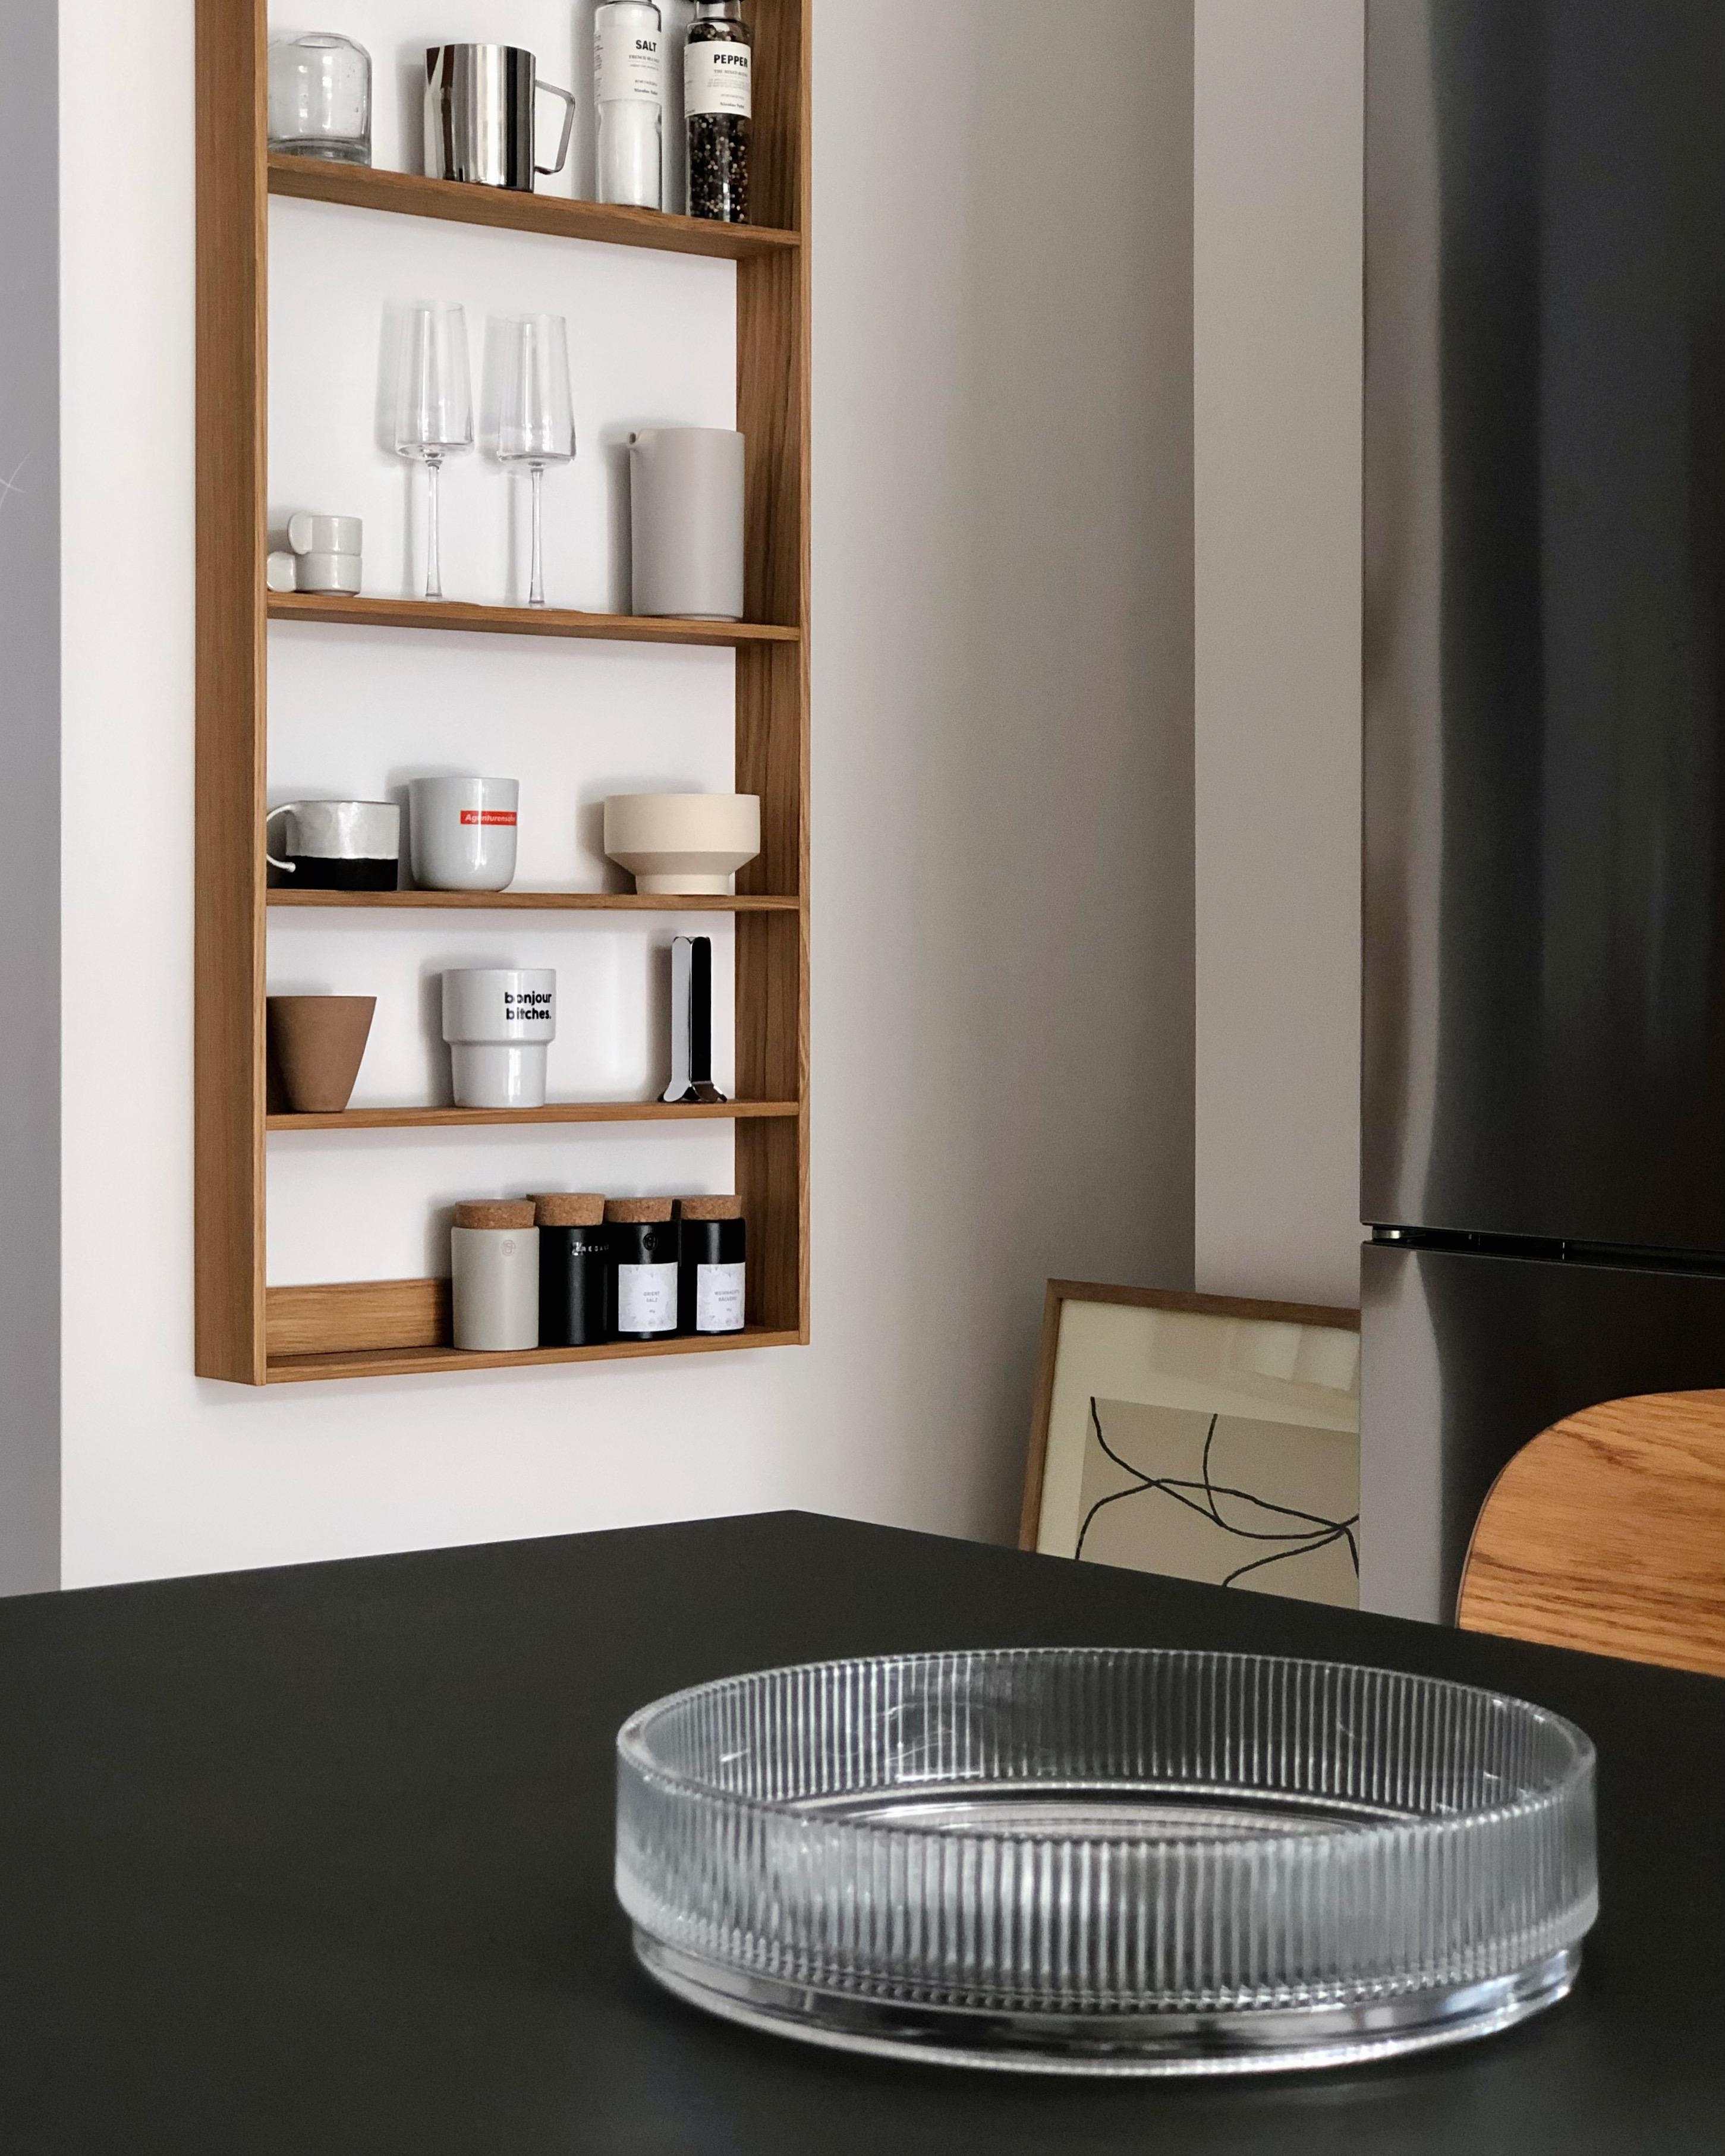 #küche #kitchen #shelf #regal #skandinavisch #minimalistisch #aufbewahrung #stauraum #dekoidee #interior #interieur